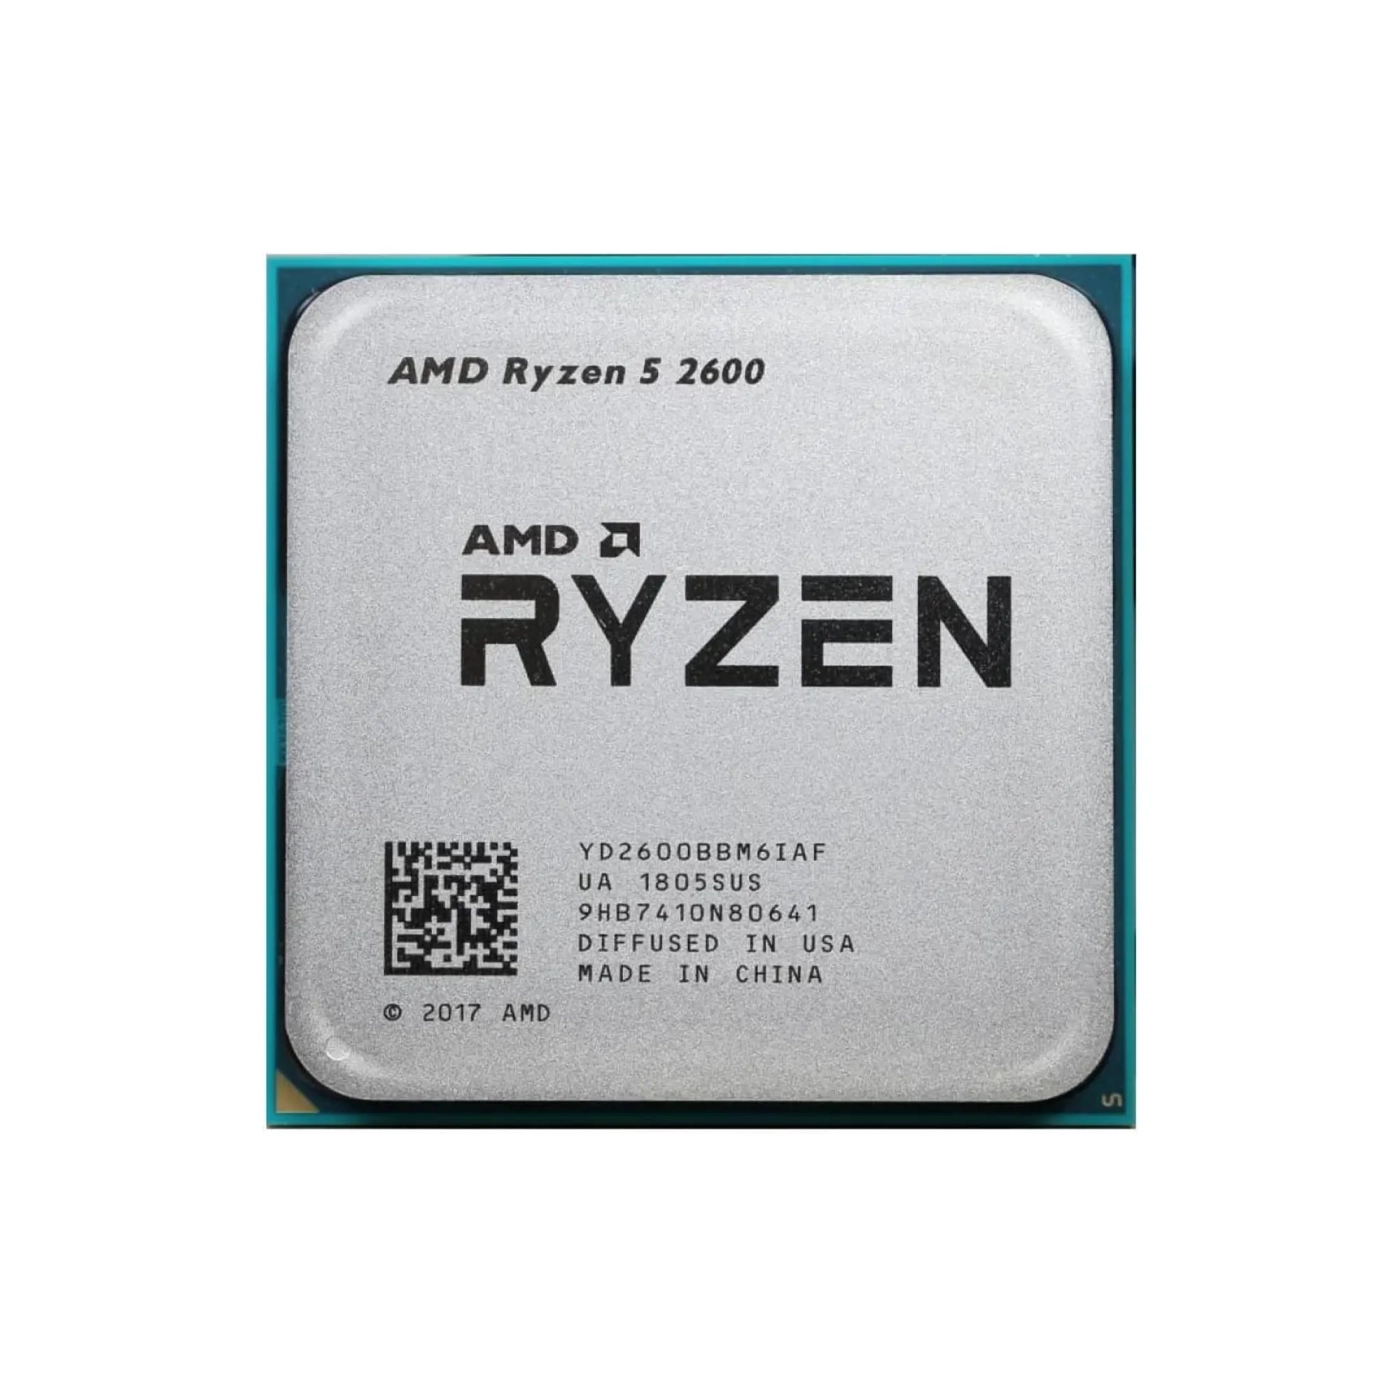 Купить Процессор AMD Ryzen 5 2600 3.9GHz, 6C/12T, 19MB,65W,AM4 Tray (YD2600BBM6IAF) - фото 1